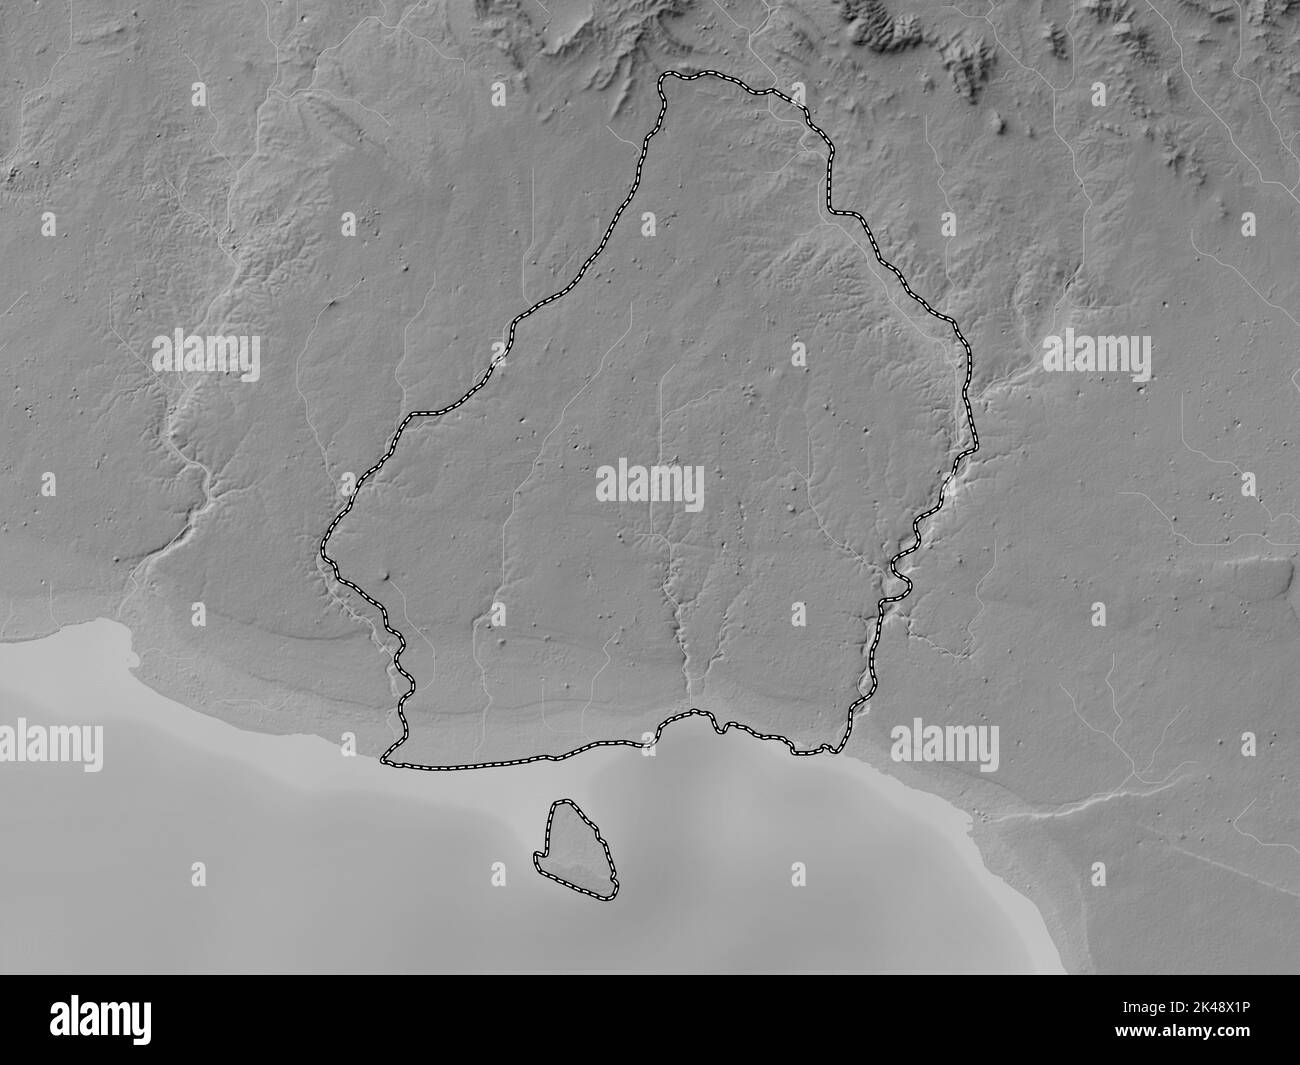 La Romana, provincia della Repubblica Dominicana. Mappa in scala di grigi con laghi e fiumi Foto Stock